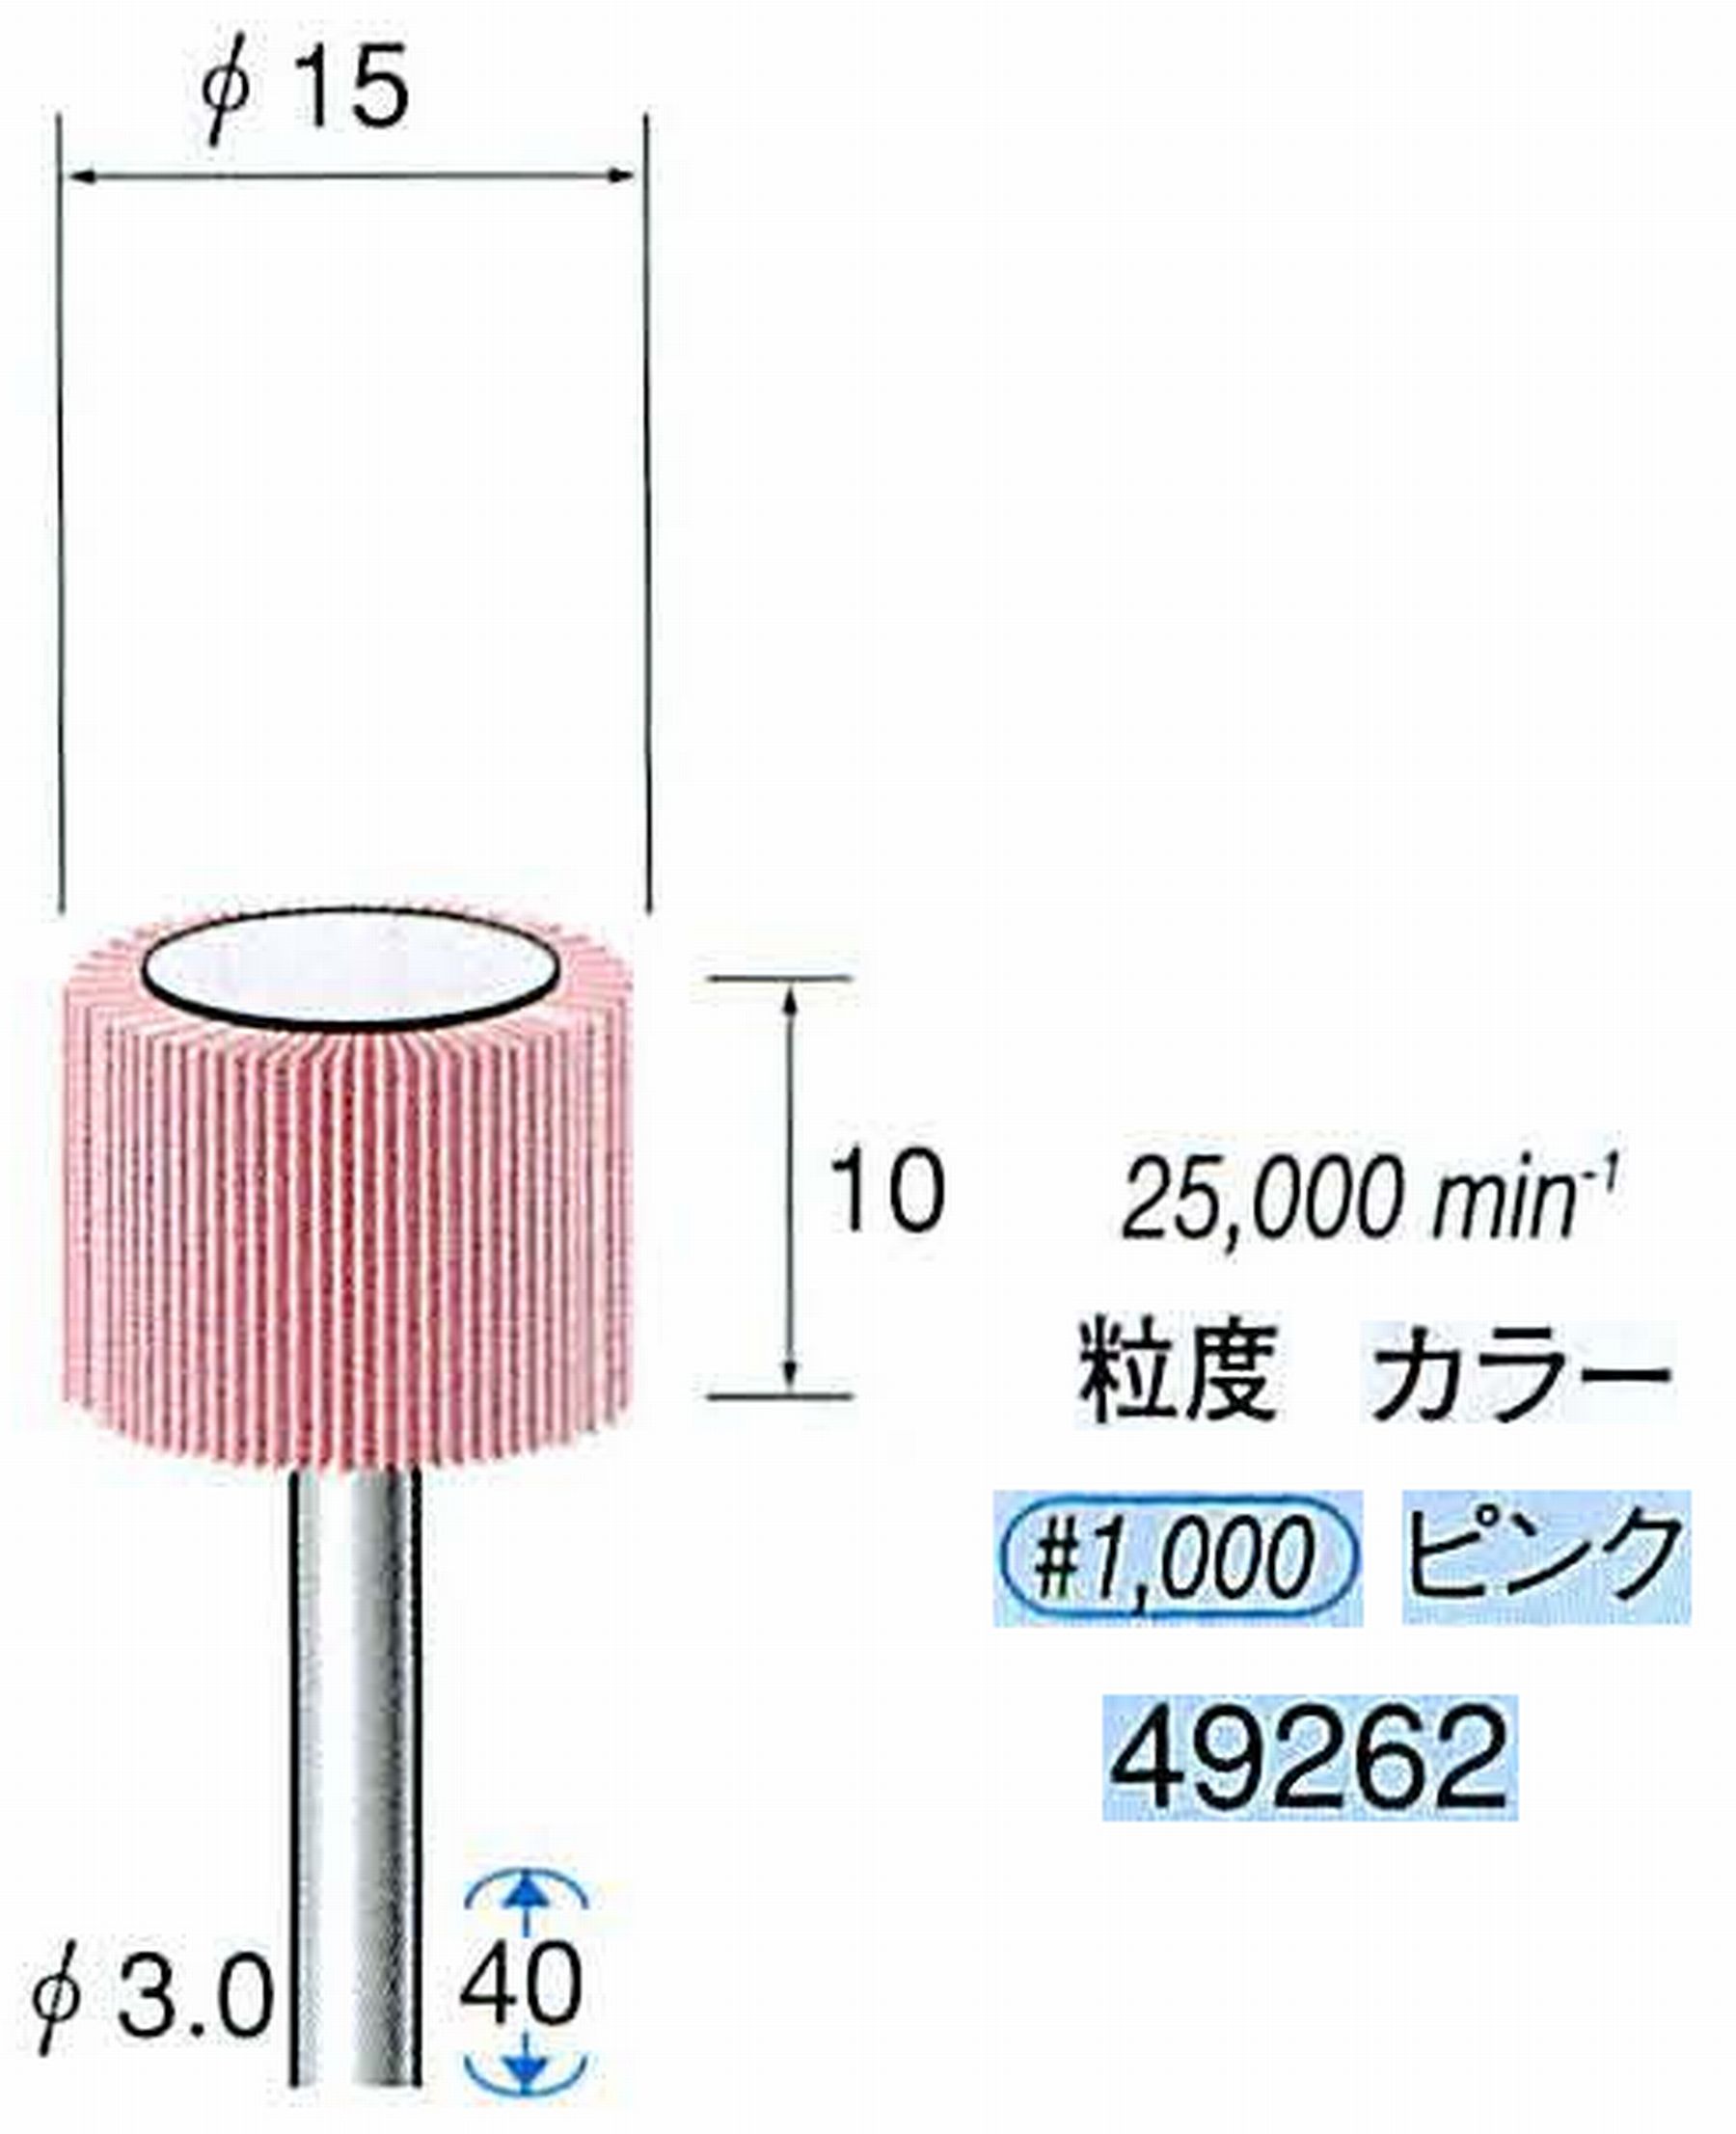 ナカニシ/NAKANISHI ファイン フラップサンダー 軸径(シャンク)φ3.0mm 49262